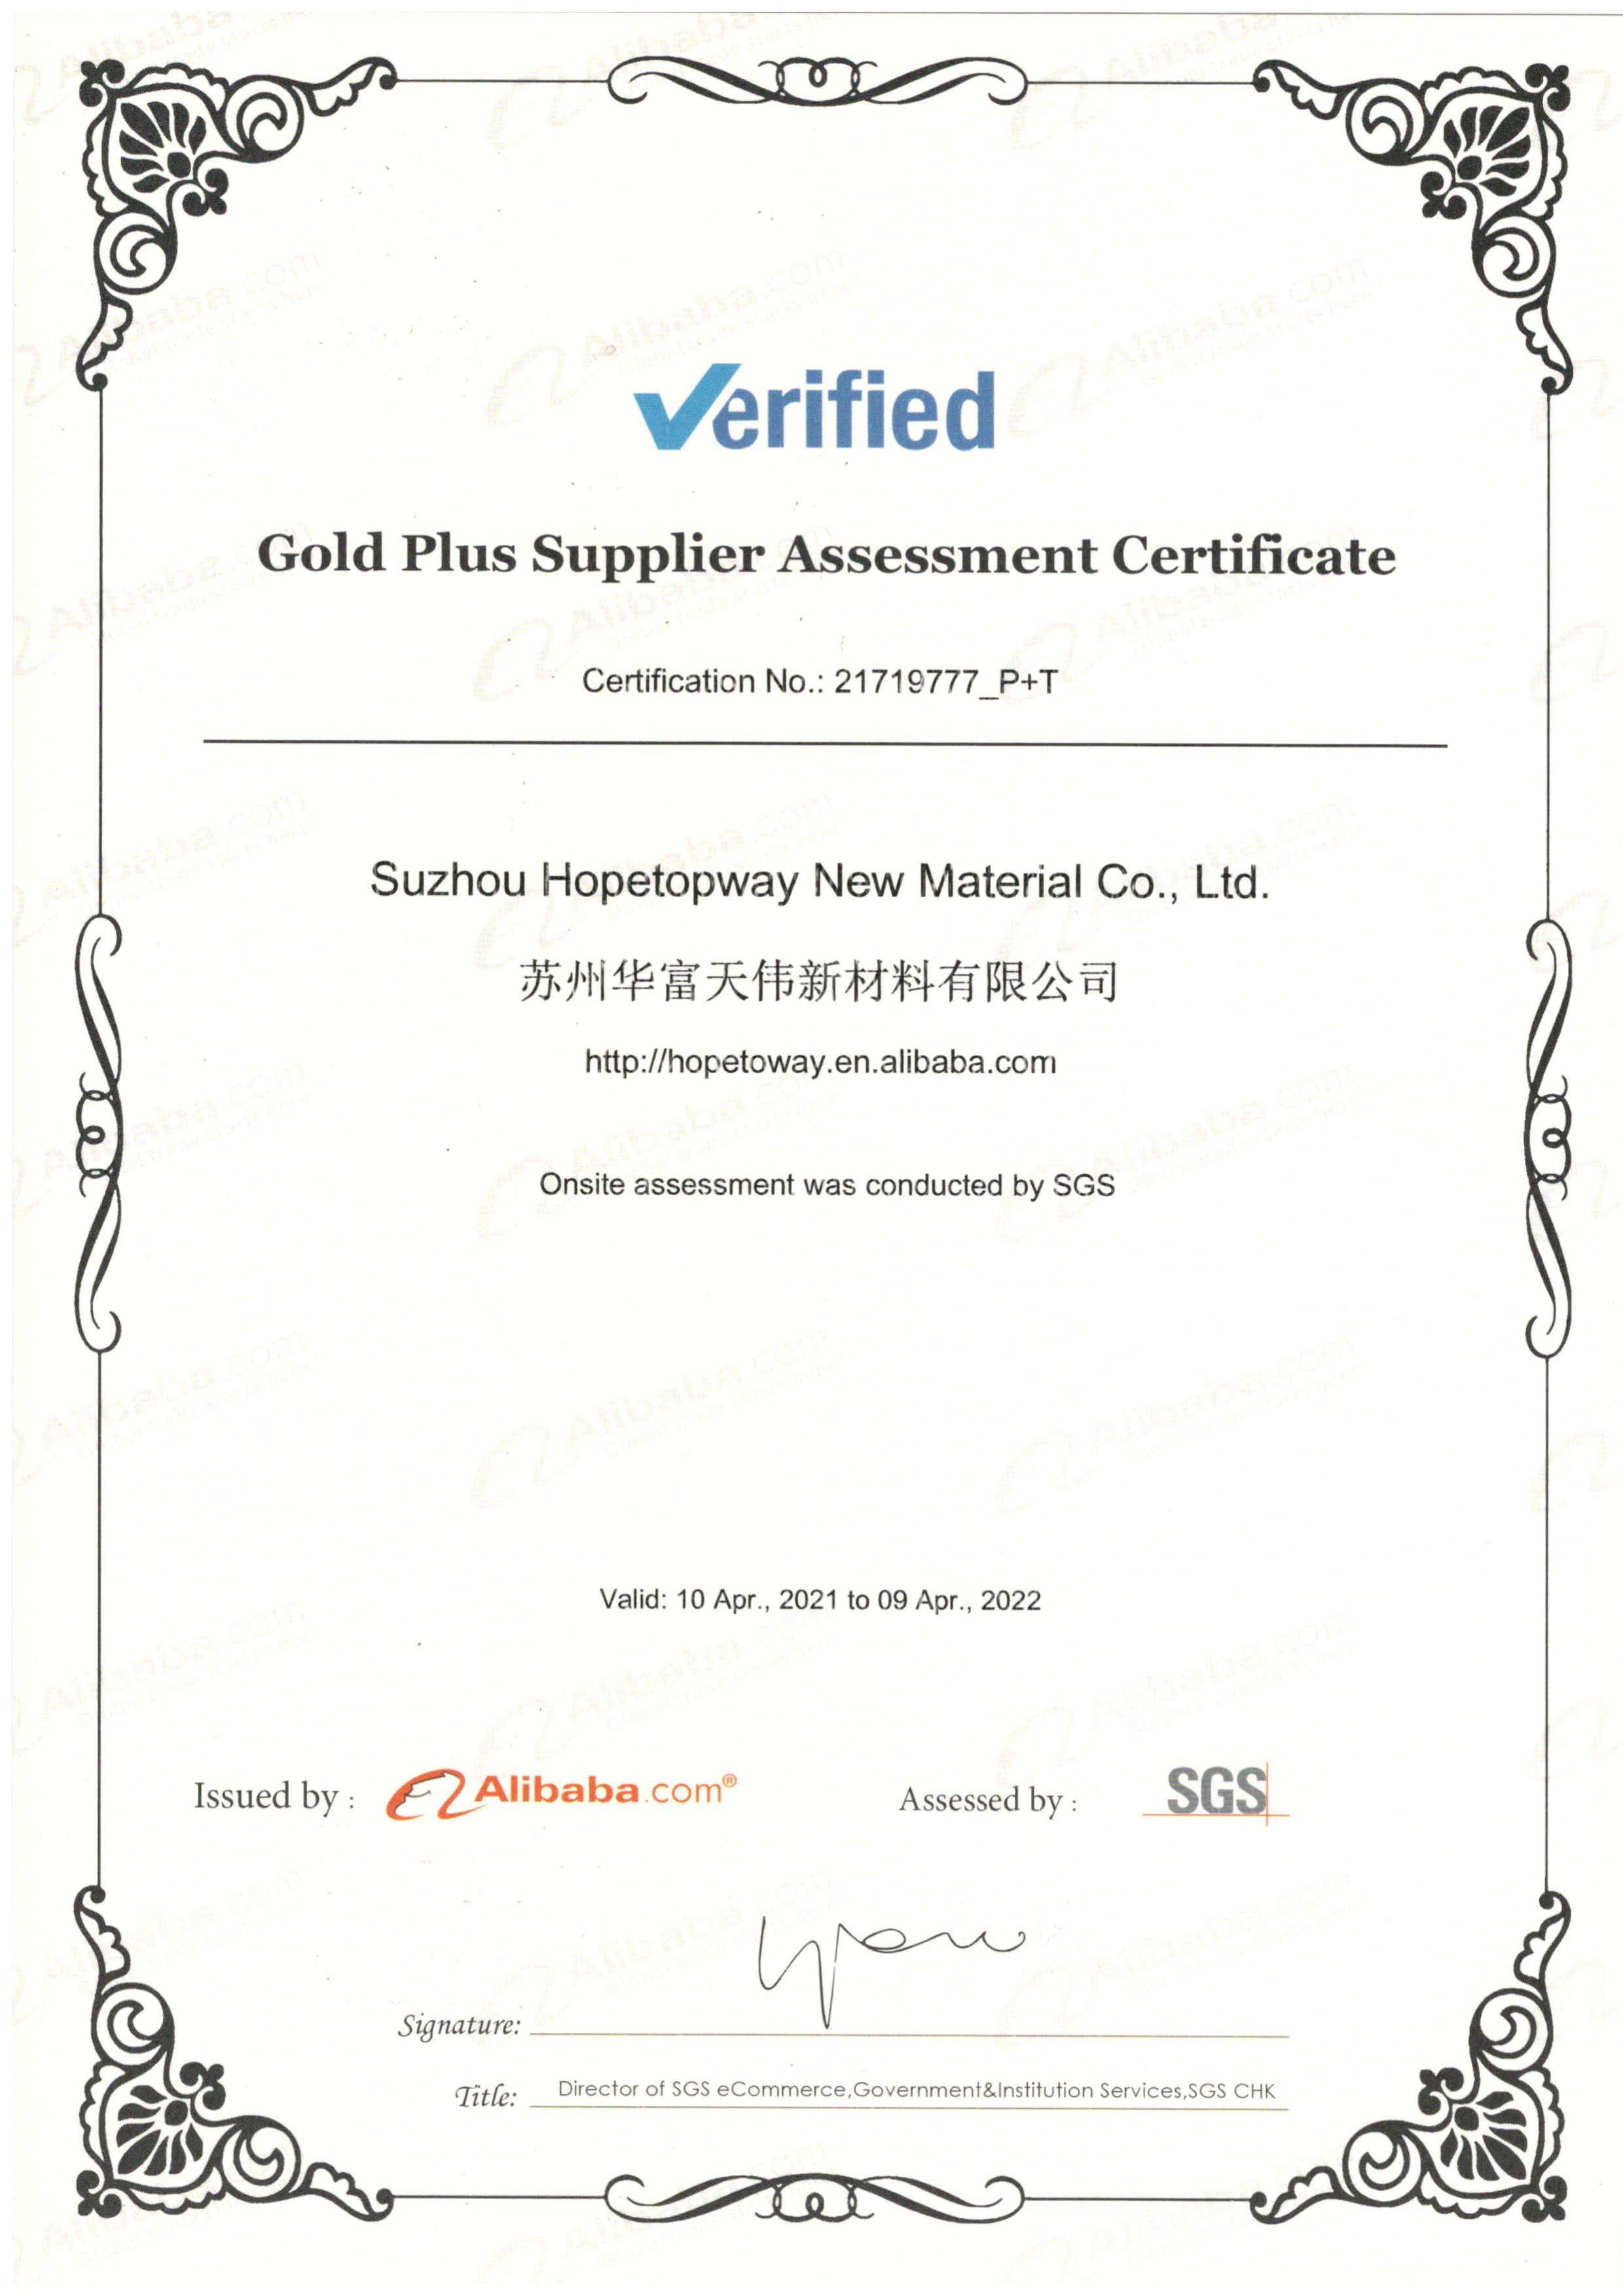 SGS certification of Hopetopway